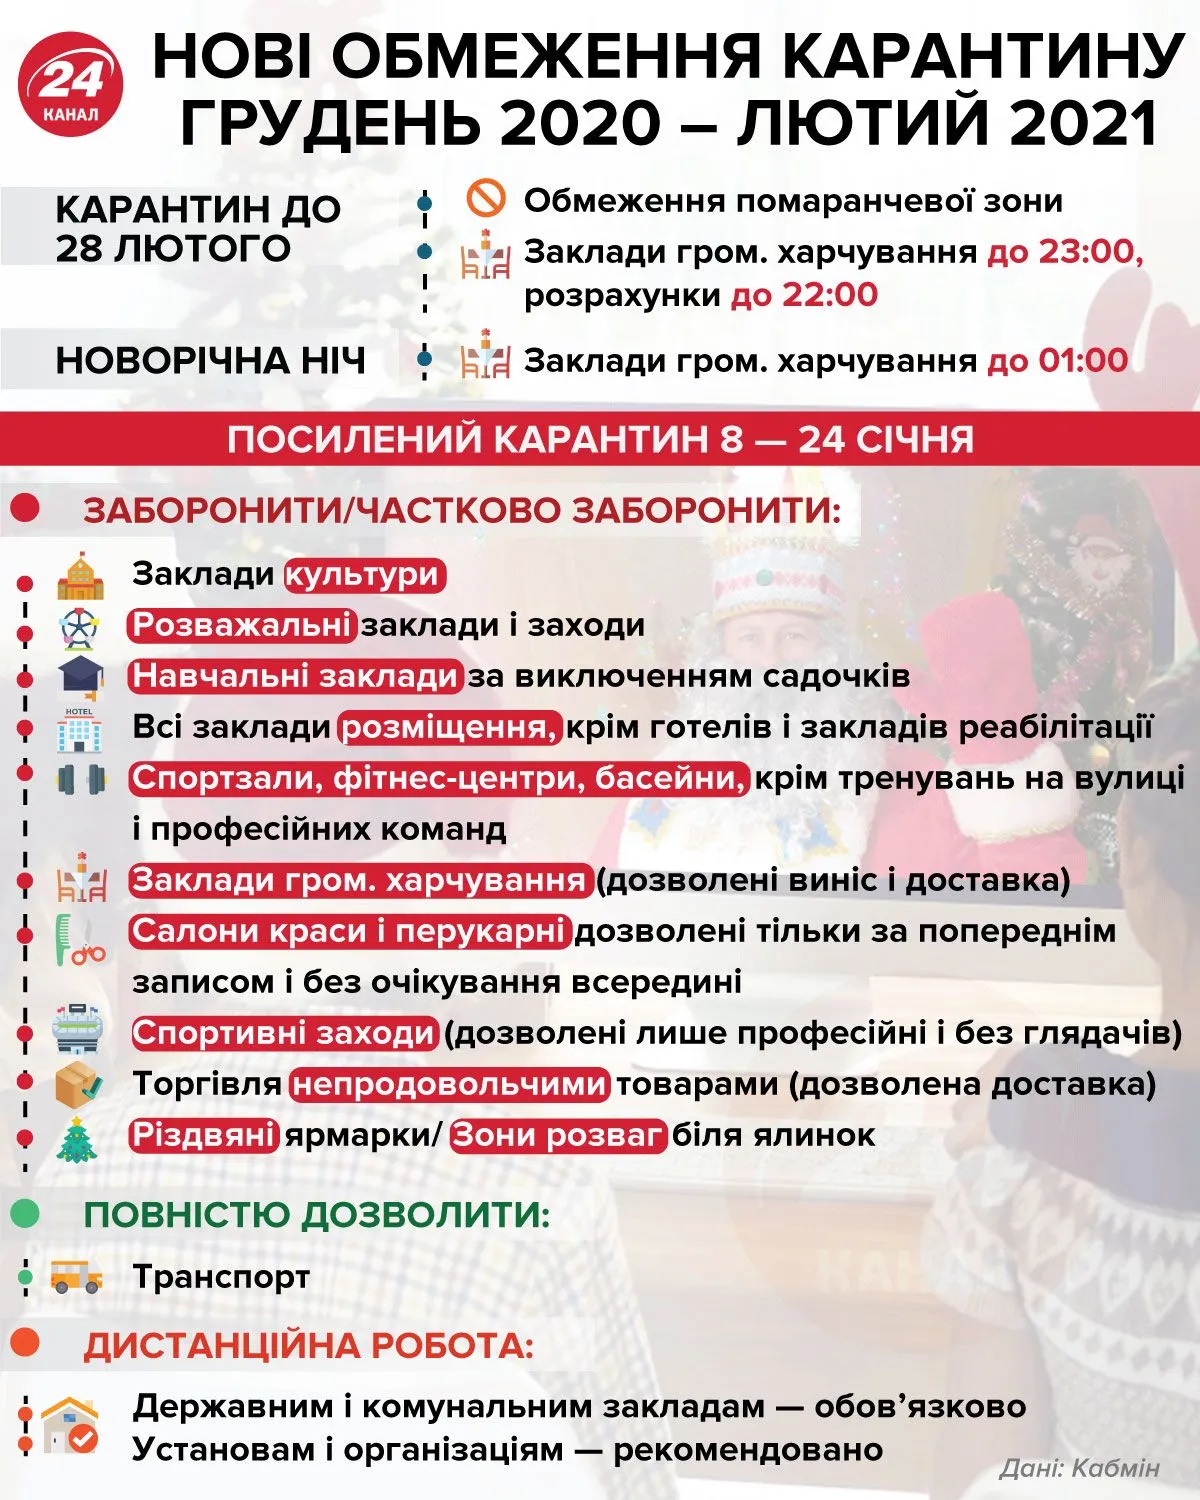 Нові обмеження карантину в Україні Інфографіка 24 каналу